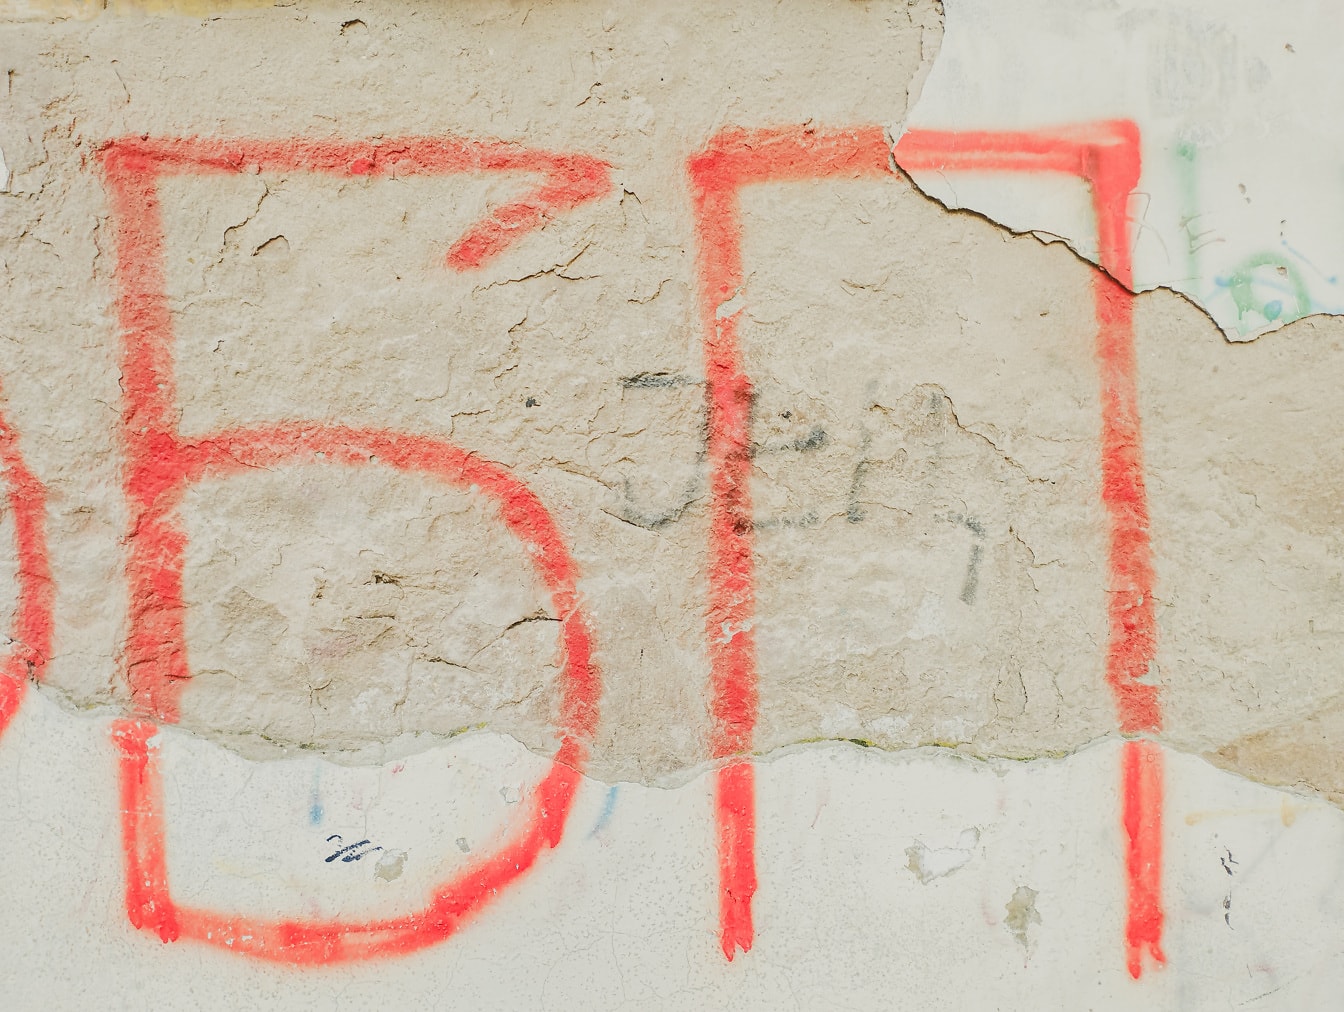 Graffiti de texto cirílico en una vieja pared en ruinas